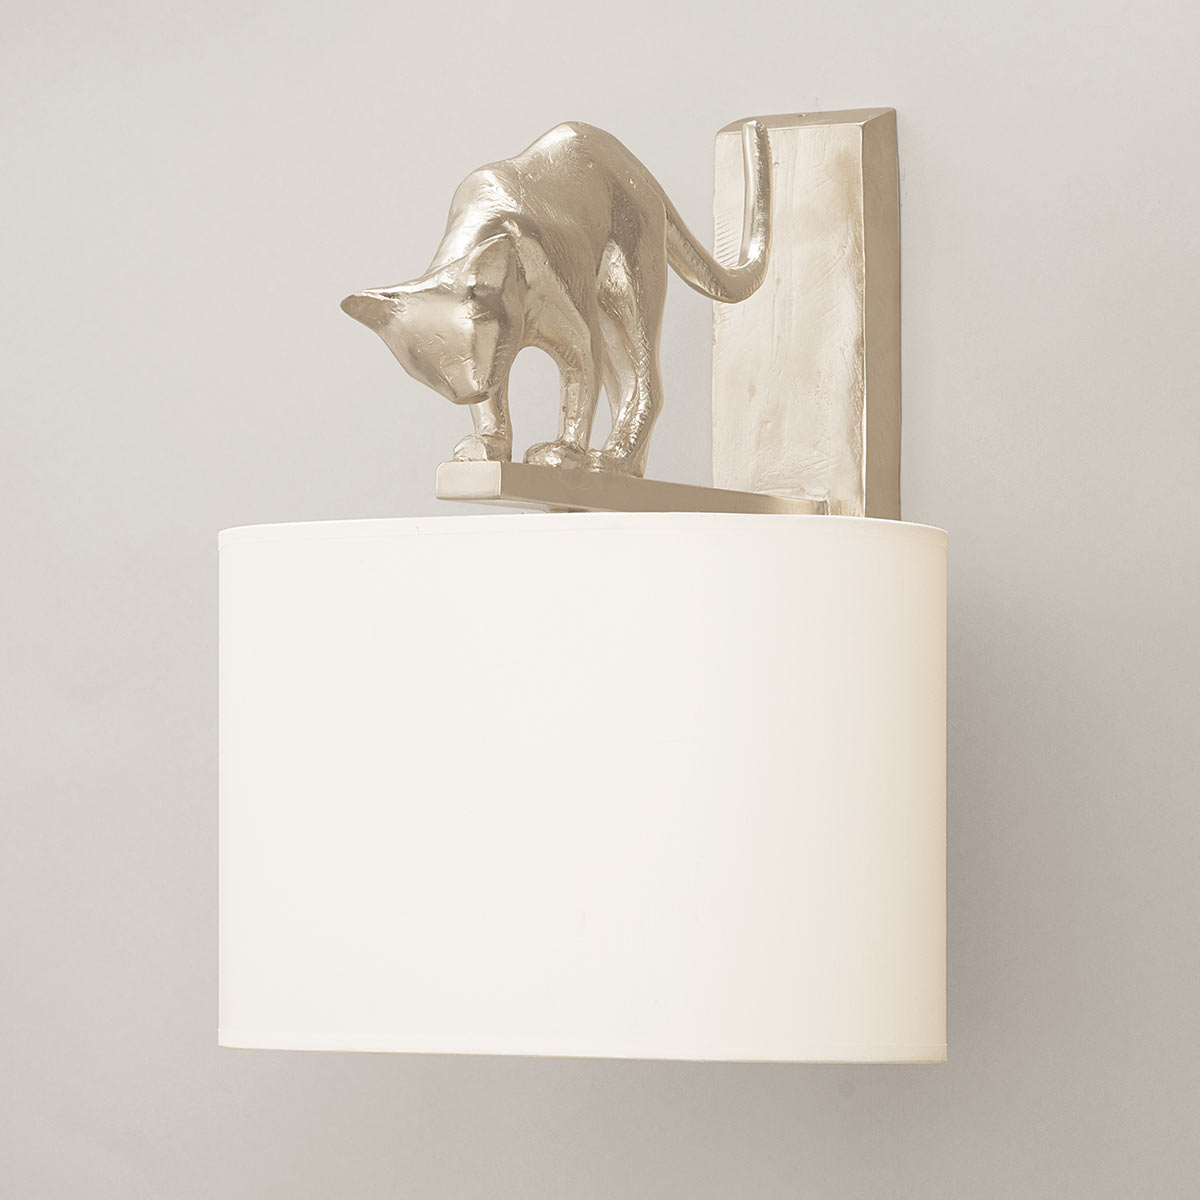 objet-insolite-lili-applique-bronze-nickel-Decoris-Interior_Design-Zurich.jpg